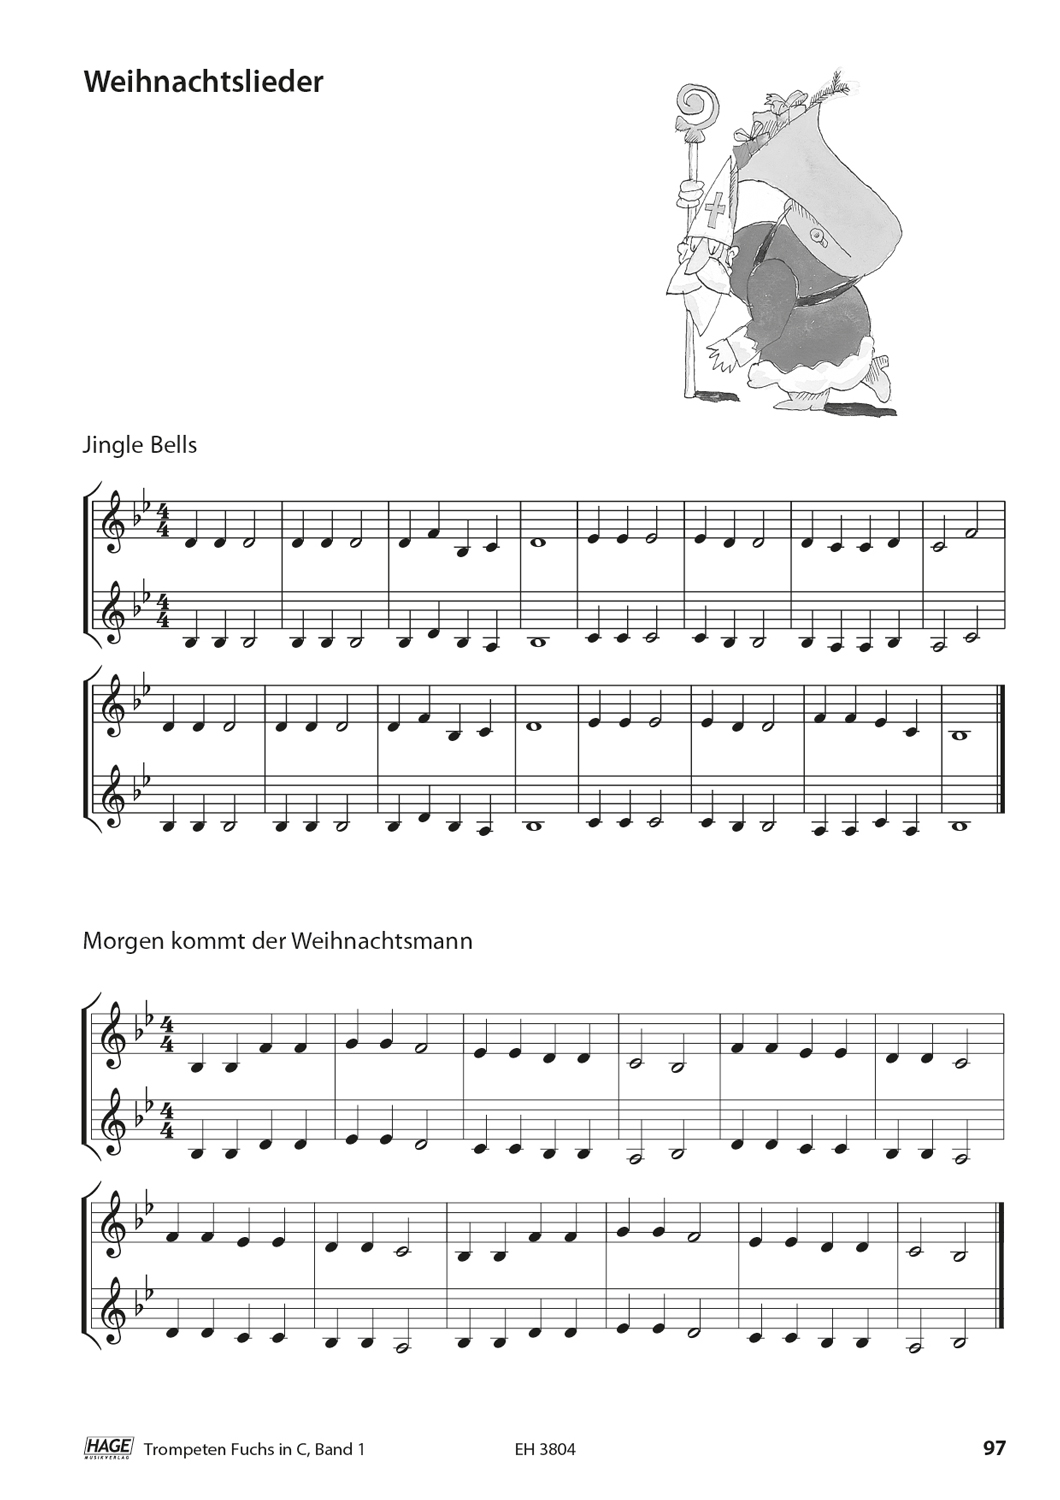 Trompeten Fuchs Band 1 in C für Posaunenchor (mit CD) Seiten 10